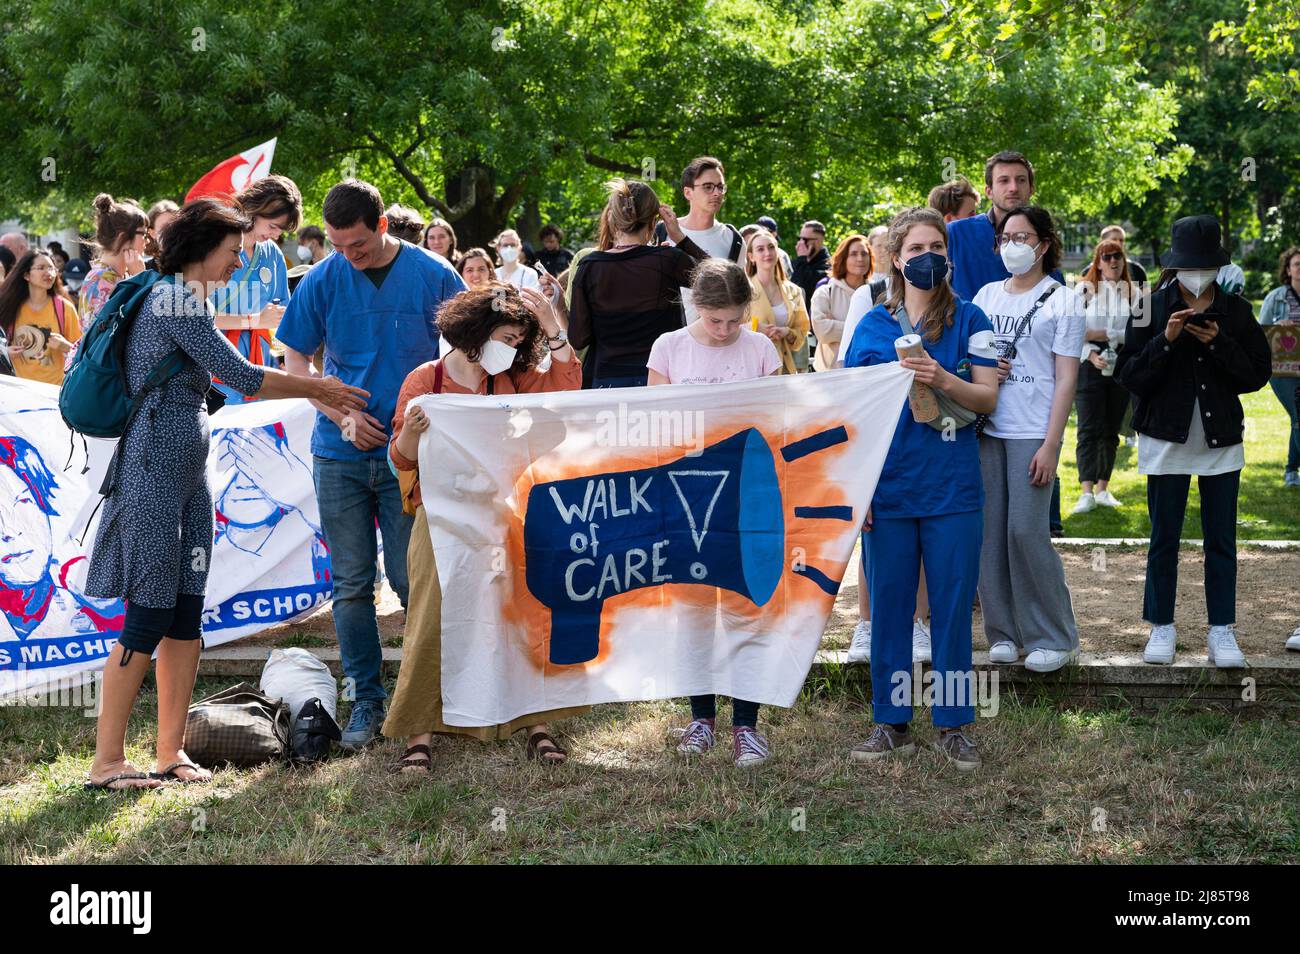 12.05.2022, Berlin, Deutschland, Europa - Mitarbeiter und Auszubildende der Pflegeberufe protestieren bei einer Demonstration unter dem Motto 'Walk of Care'. Stockfoto